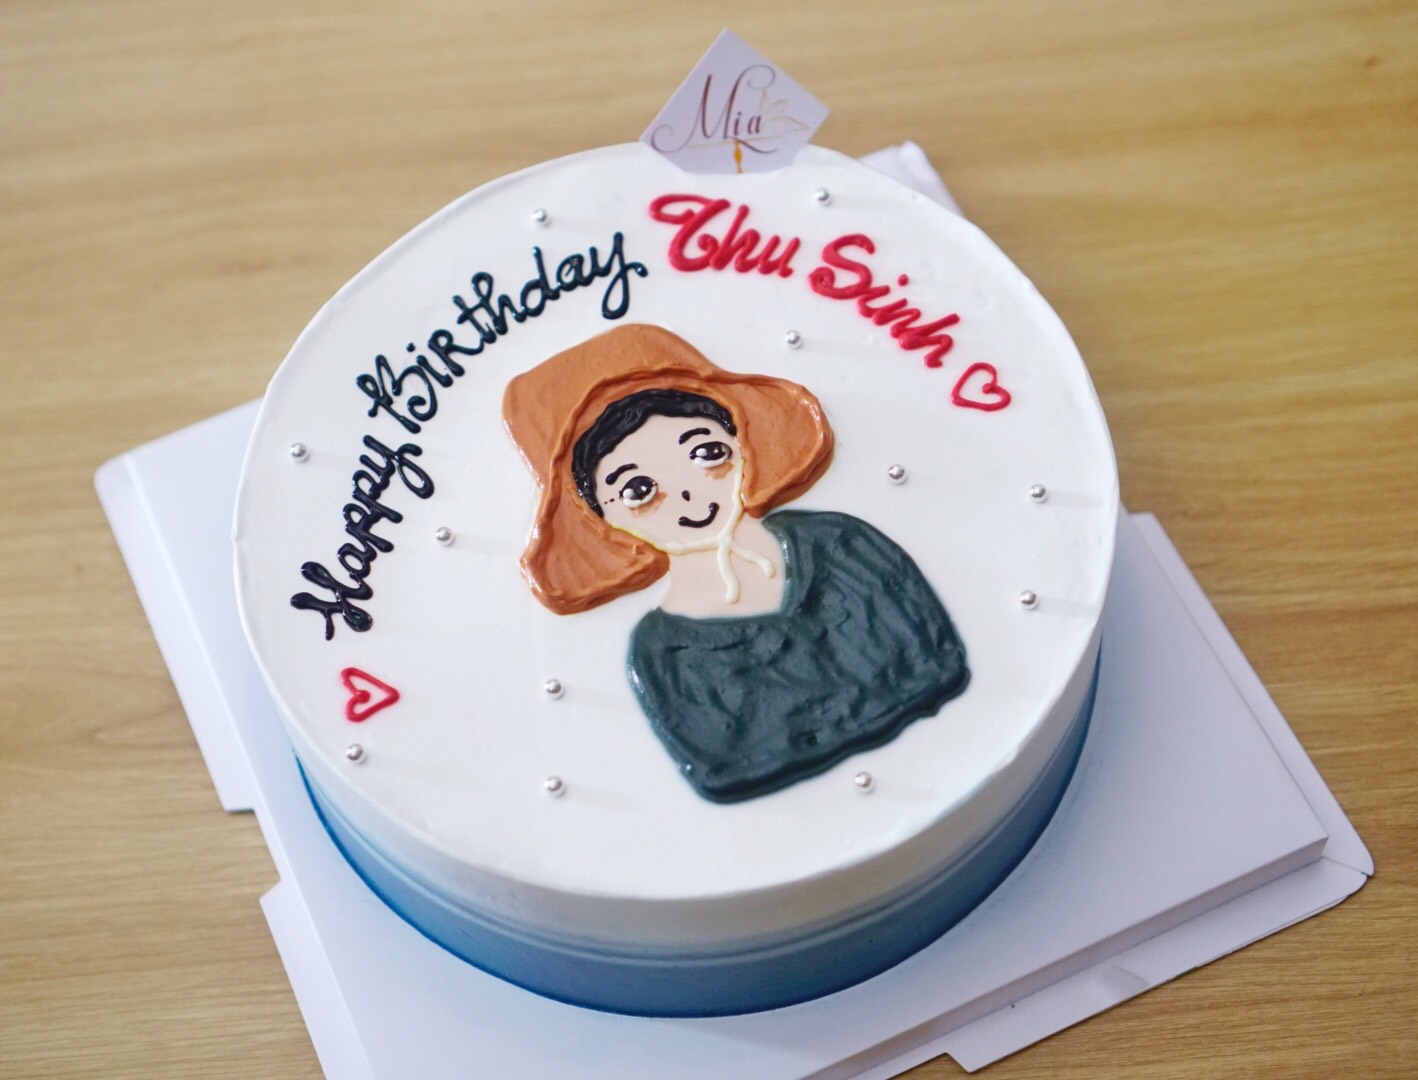 Bánh kem vẽ hình chibi trang trí trái cây đáng yêu  Bánh Thiên Thần   Chuyên nhận đặt bánh sinh nhật theo mẫu